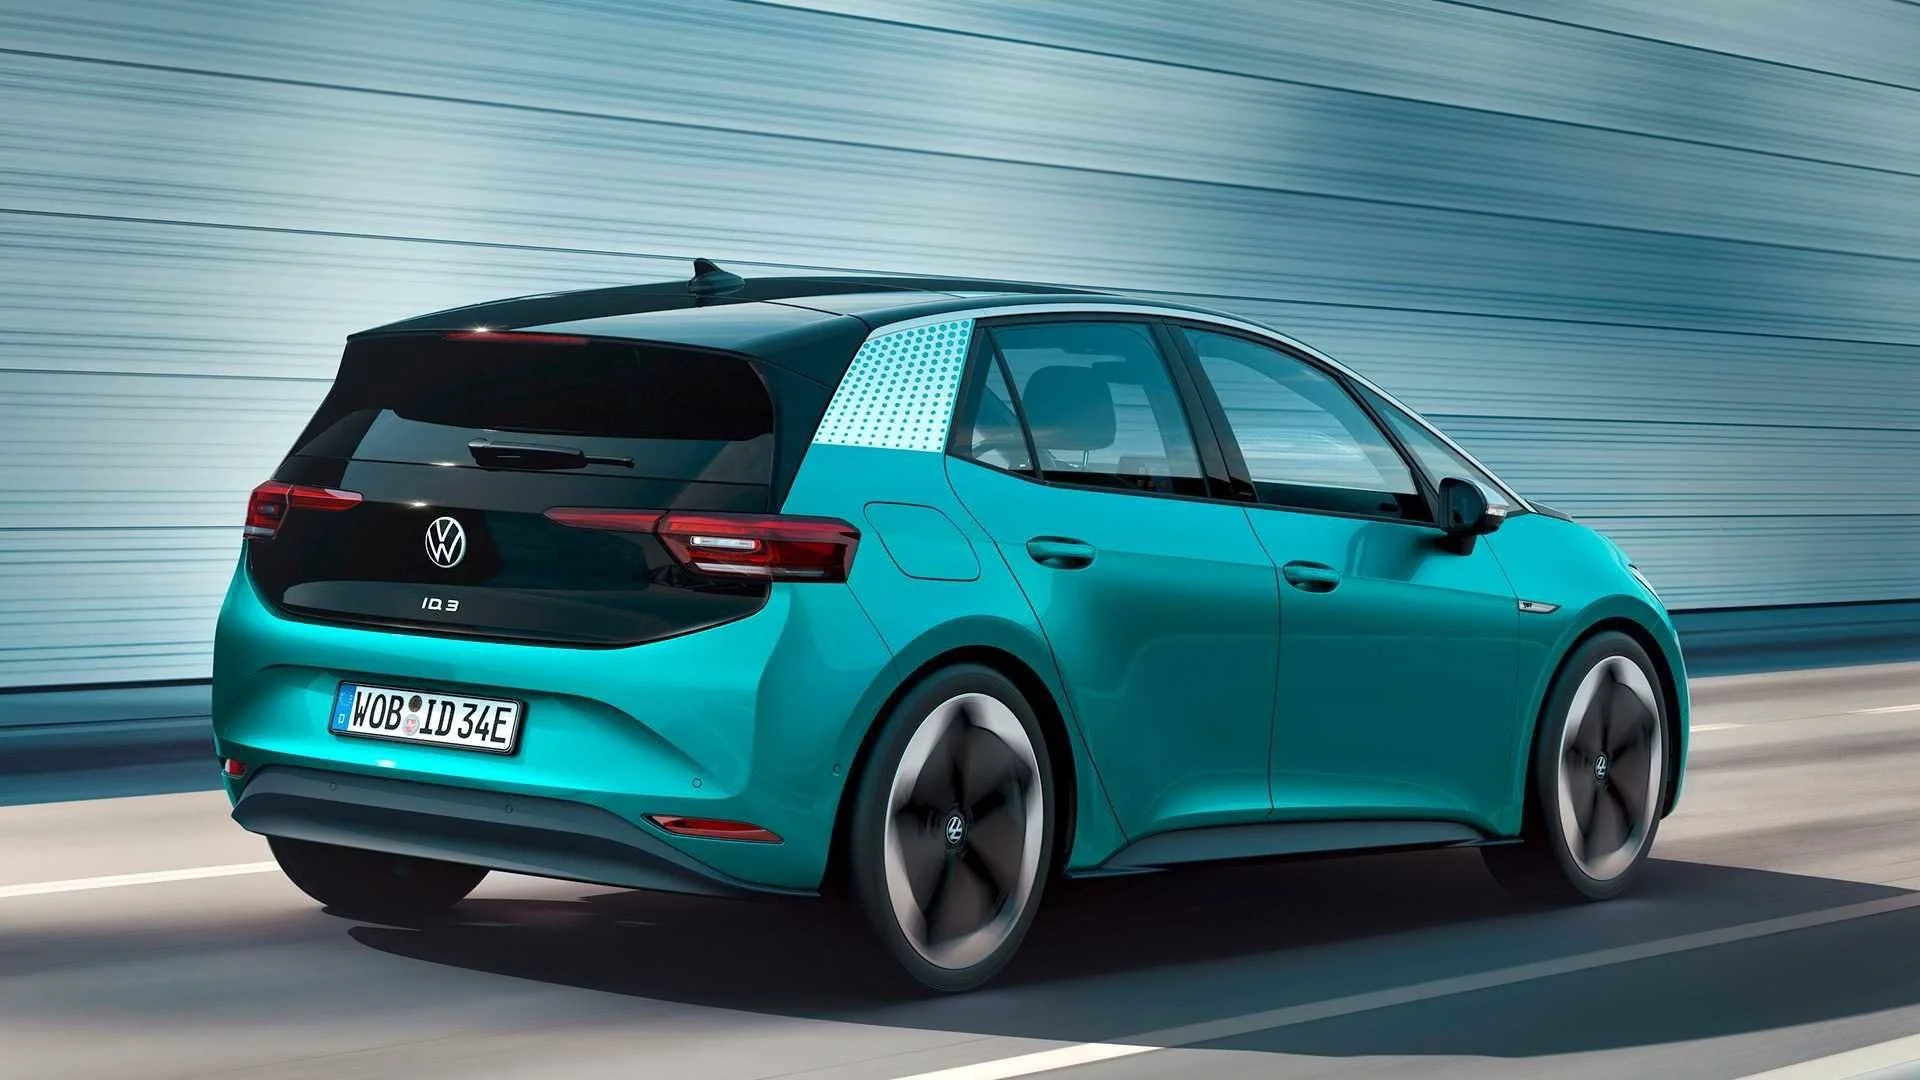 Volkswagen анонсировала обновленную версию своего электромобиля